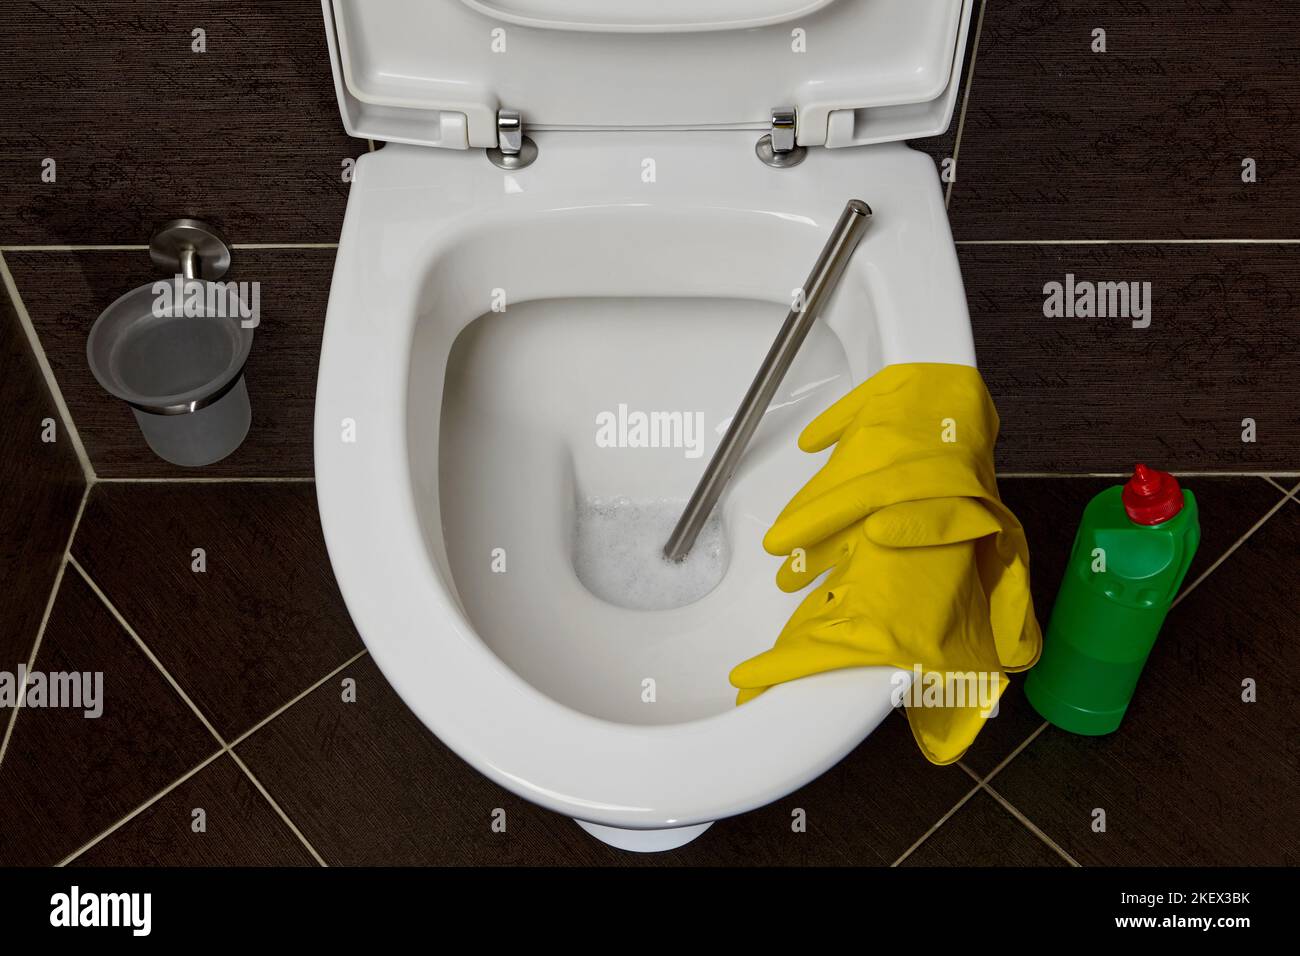 Cuvette de toilette avec brosse de toilette, gants en caoutchouc jaune et nettoyant et désinfectant sur fond de carreaux de céramique sombre dans la salle de toilette Banque D'Images